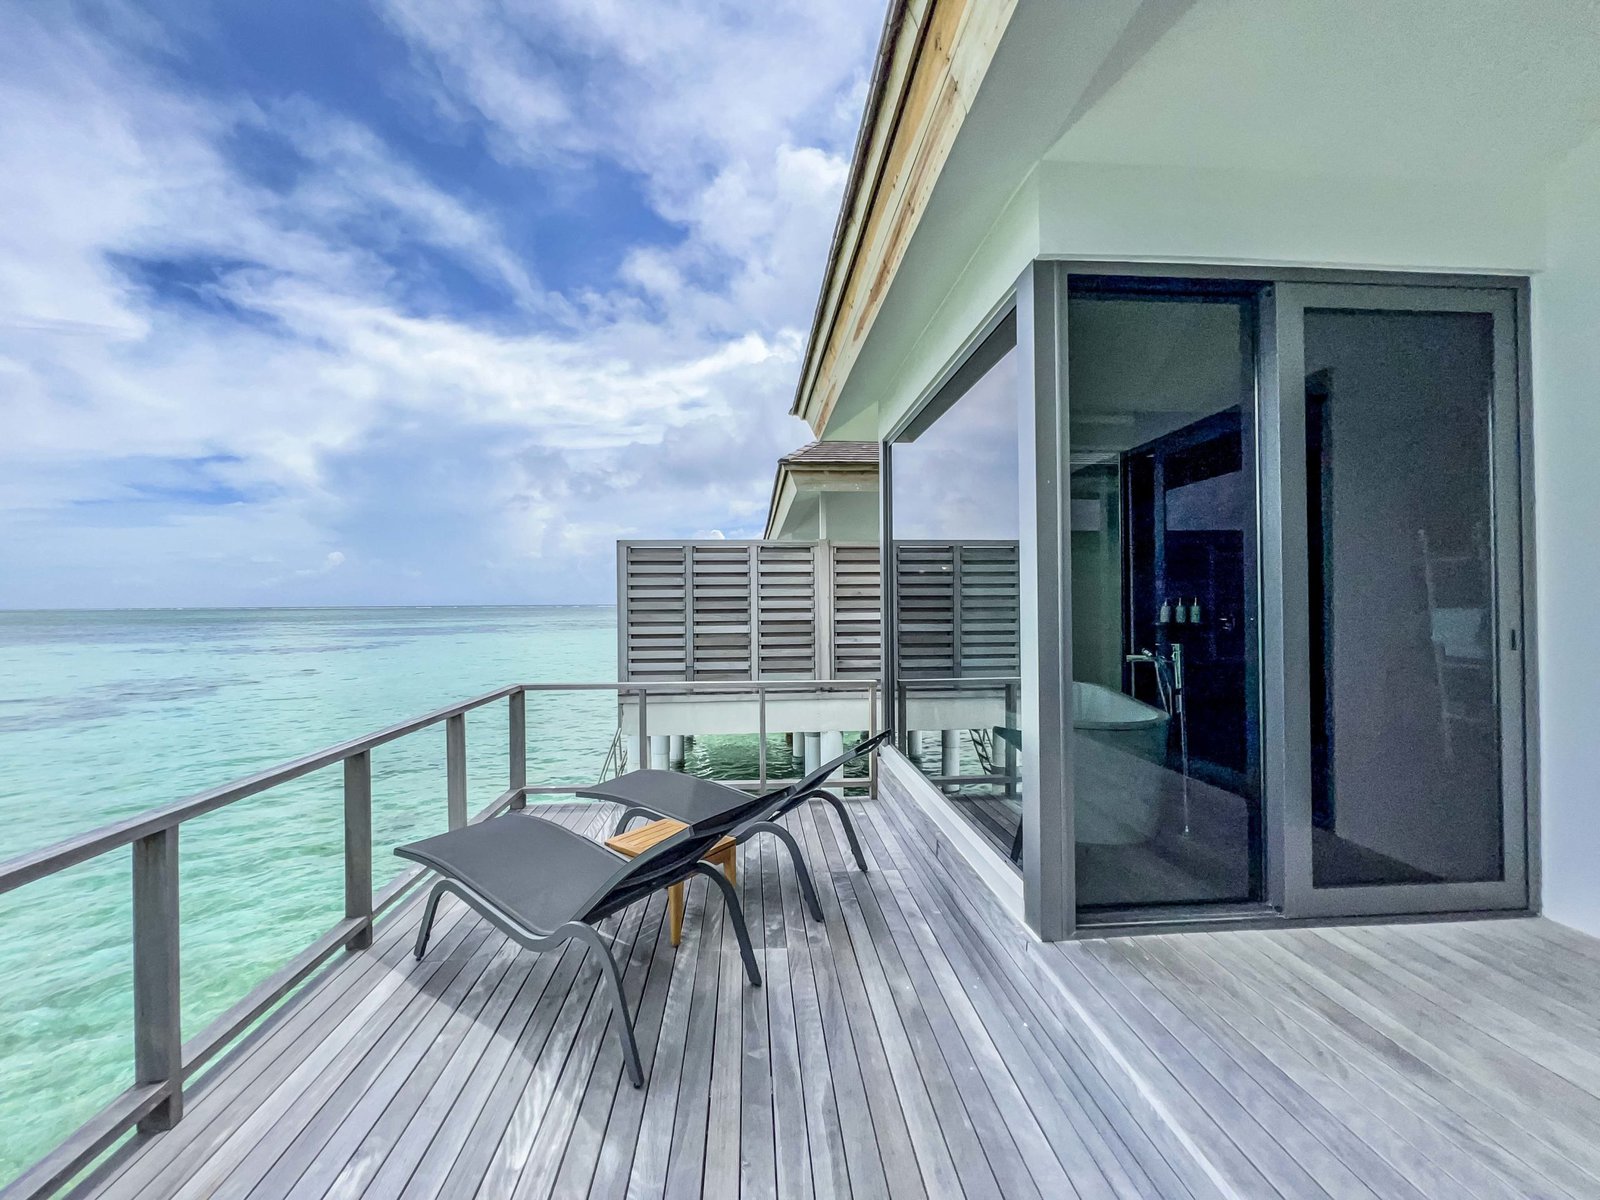 Le Meridien Maldives Resort Spa Deck 3770